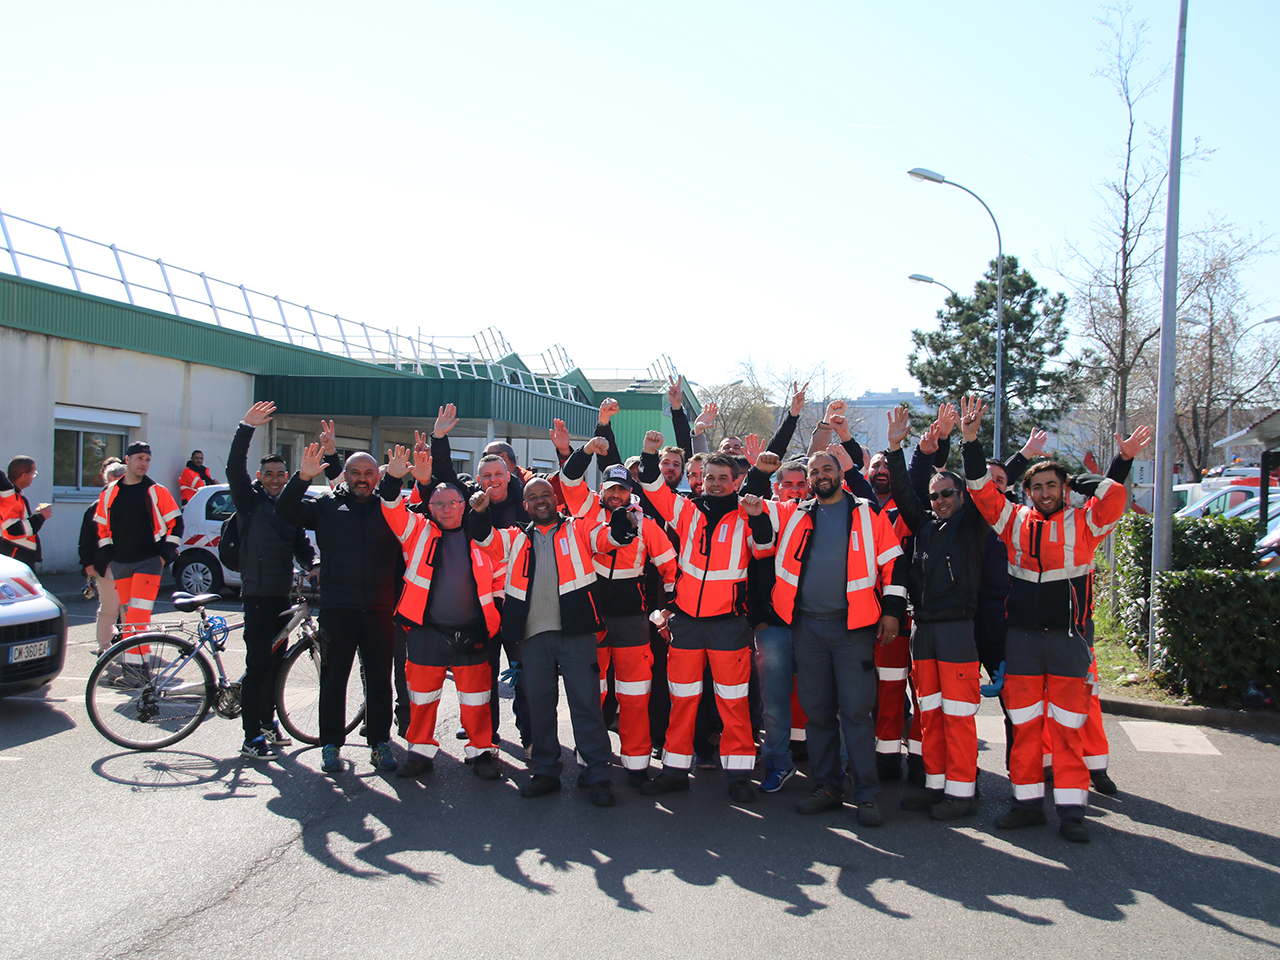 Les éboueurs grévistes de Villeurbanne - Lyonmag.com